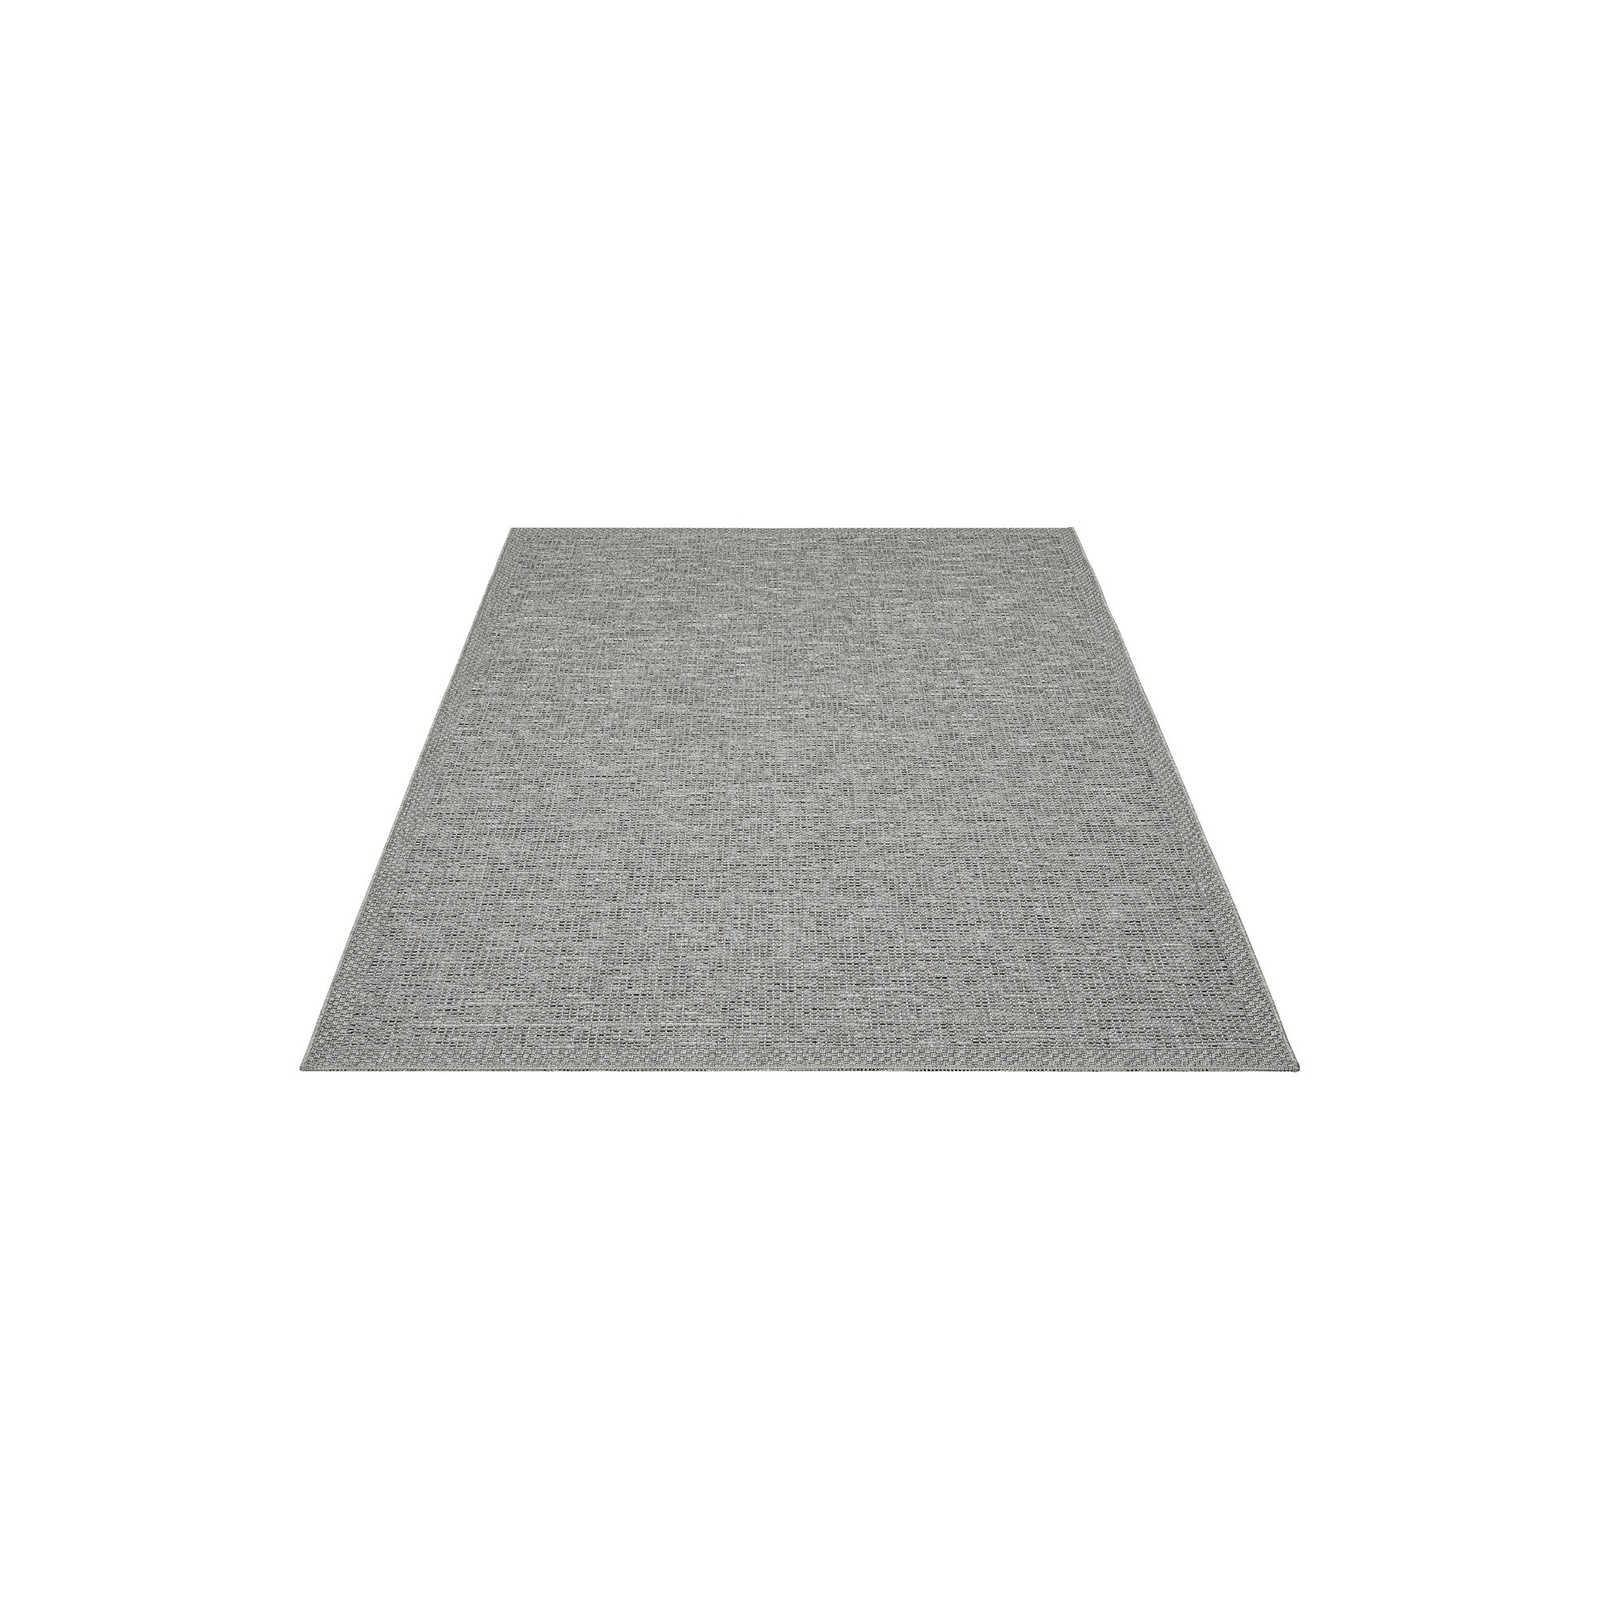 Tappeto da esterno Simple in grigio - 150 x 80 cm
